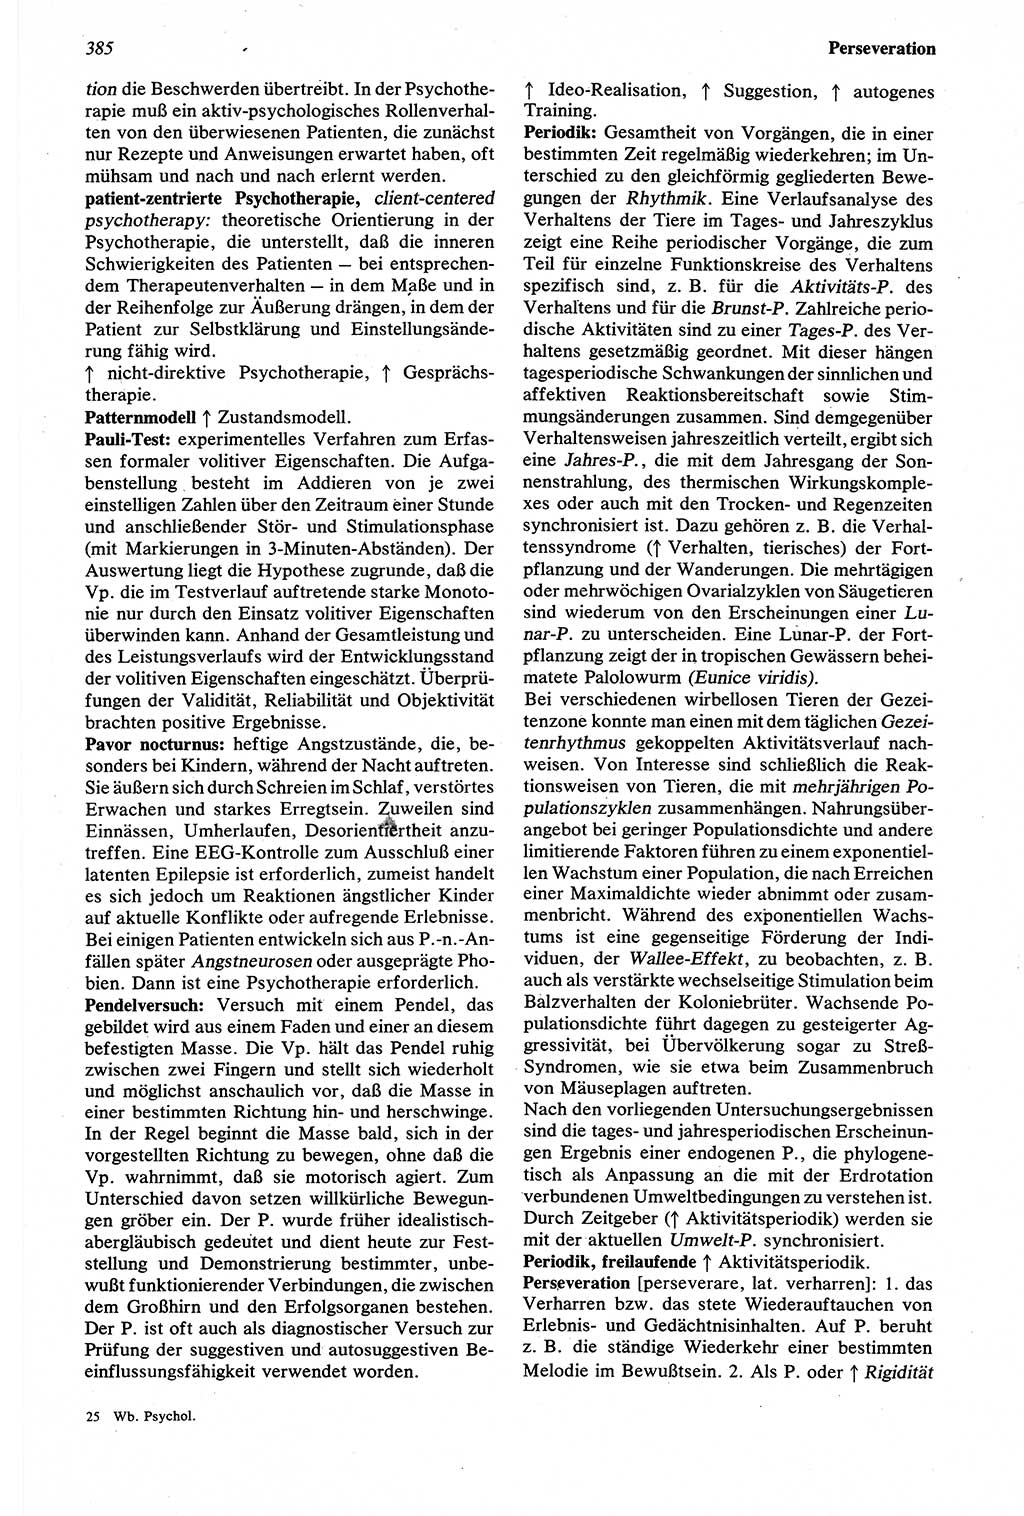 Wörterbuch der Psychologie [Deutsche Demokratische Republik (DDR)] 1976, Seite 385 (Wb. Psych. DDR 1976, S. 385)